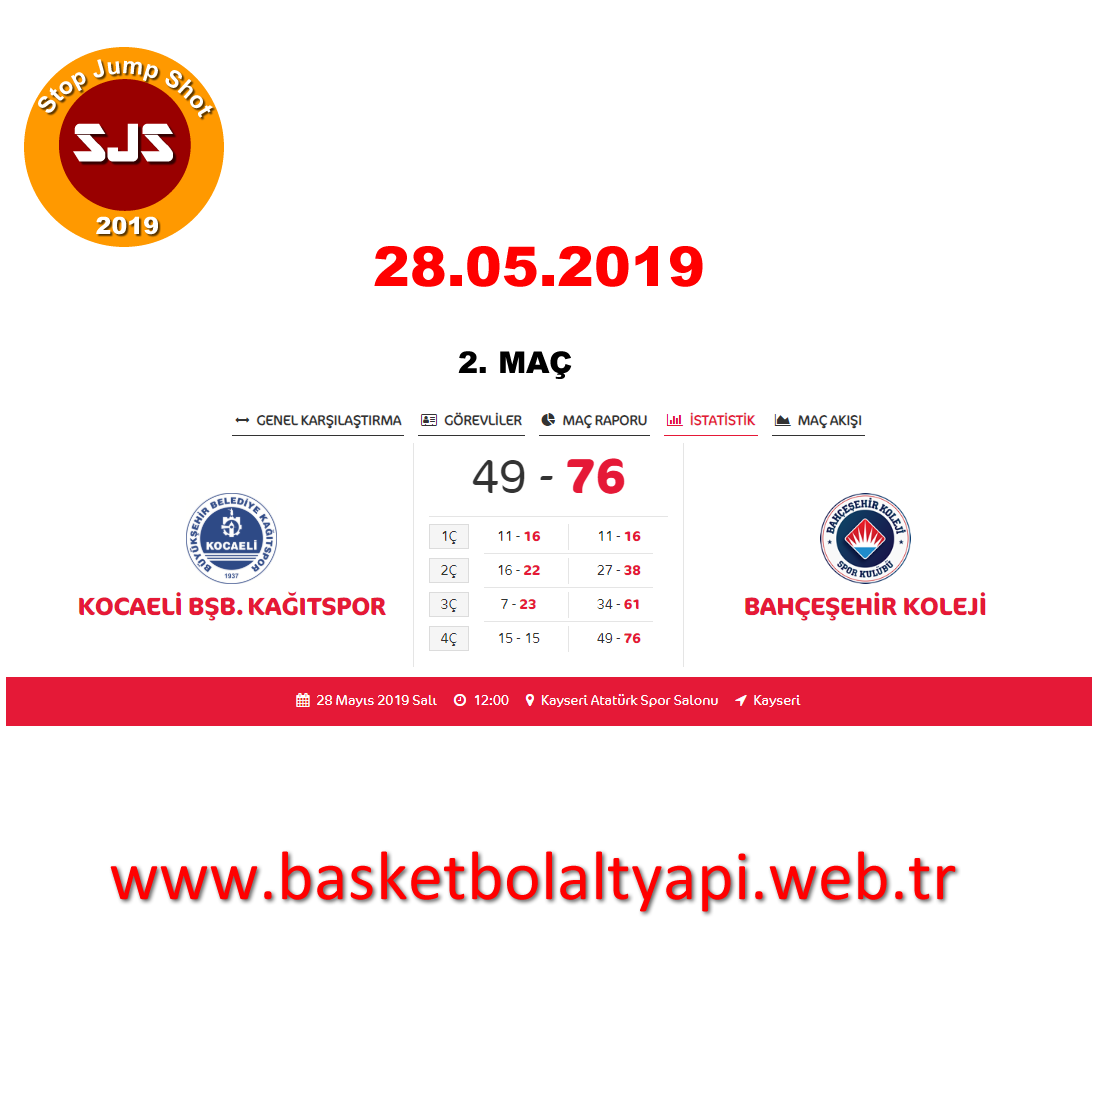 Kocaeli BŞB. Kağıtspor – Bahçeşehir Koleji BK U18 Şampiyonası İkinci Maçı